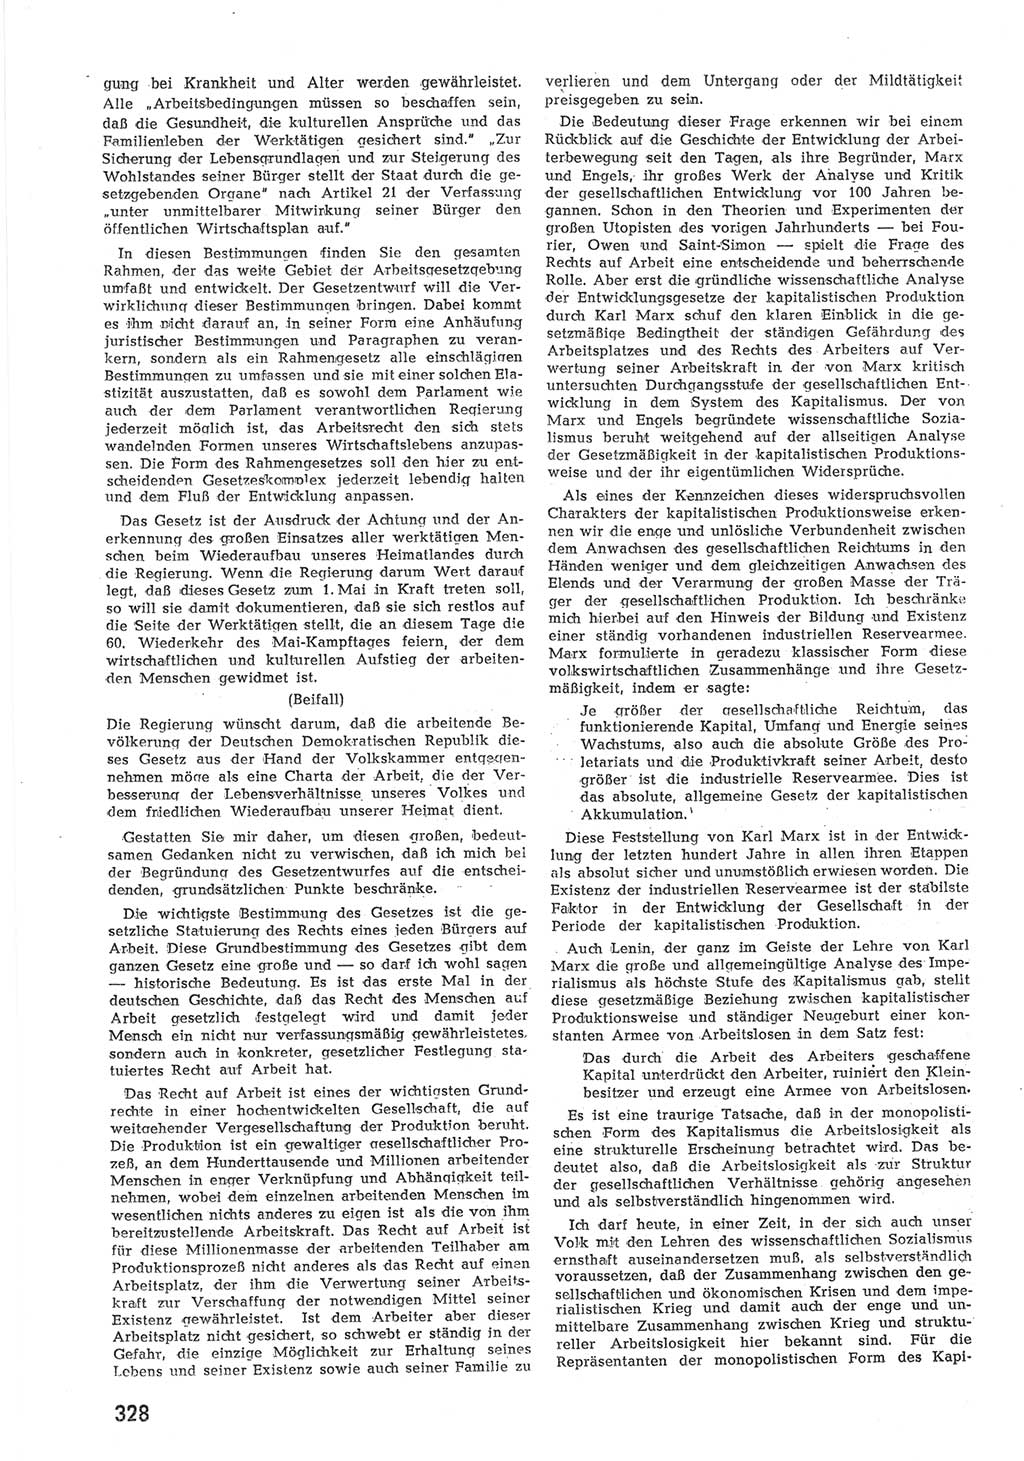 Provisorische Volkskammer (VK) der Deutschen Demokratischen Republik (DDR) 1949-1950, Dokument 342 (Prov. VK DDR 1949-1950, Dok. 342)